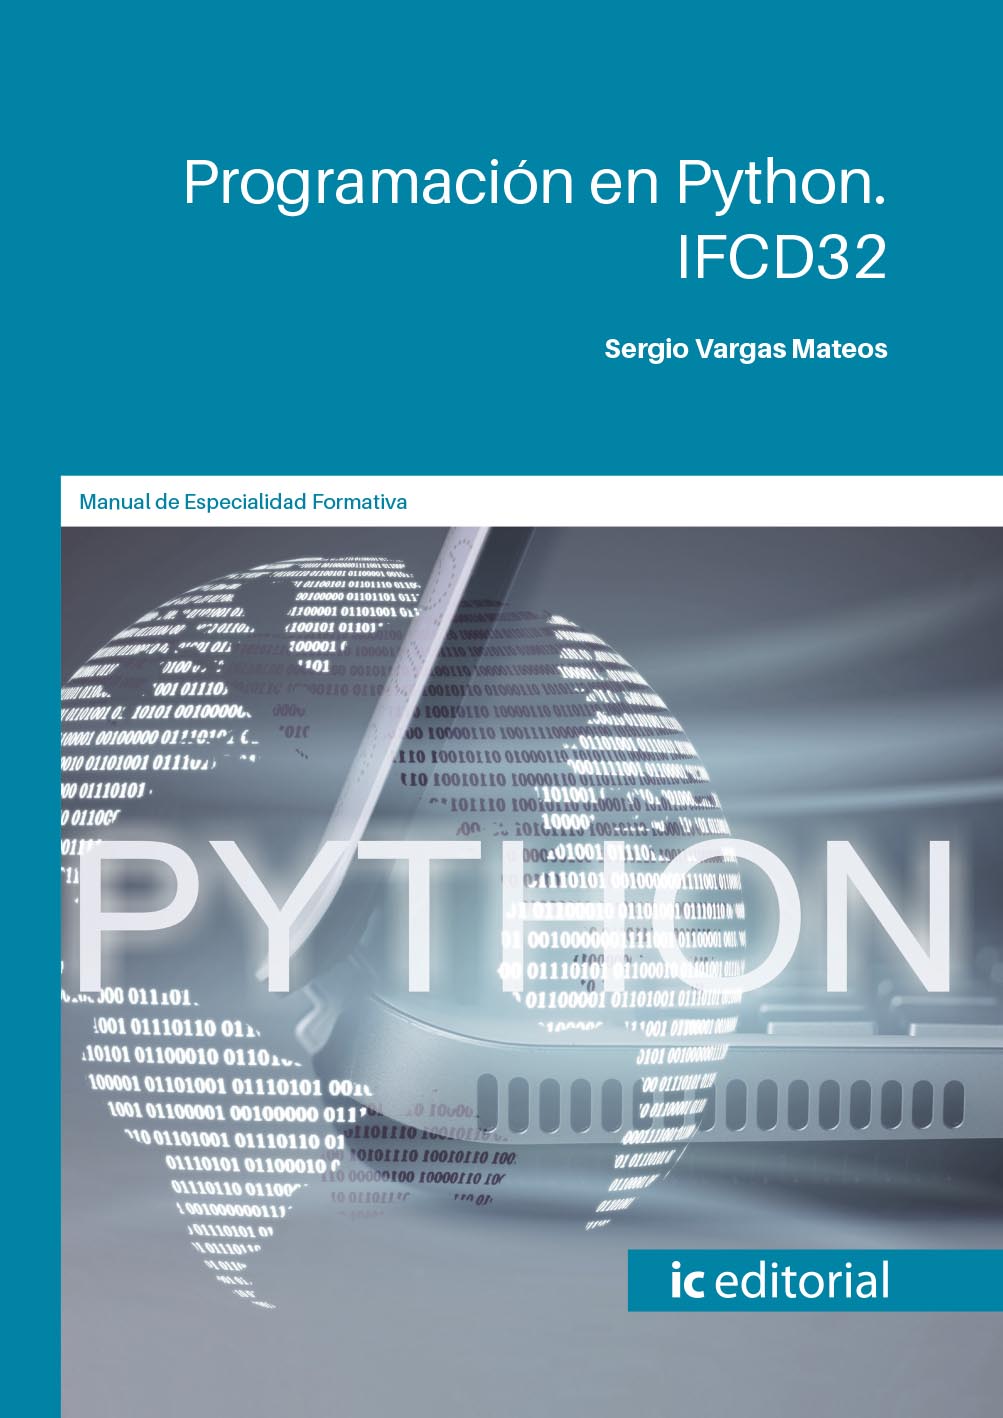 Programación en PYTHON. IFCD32